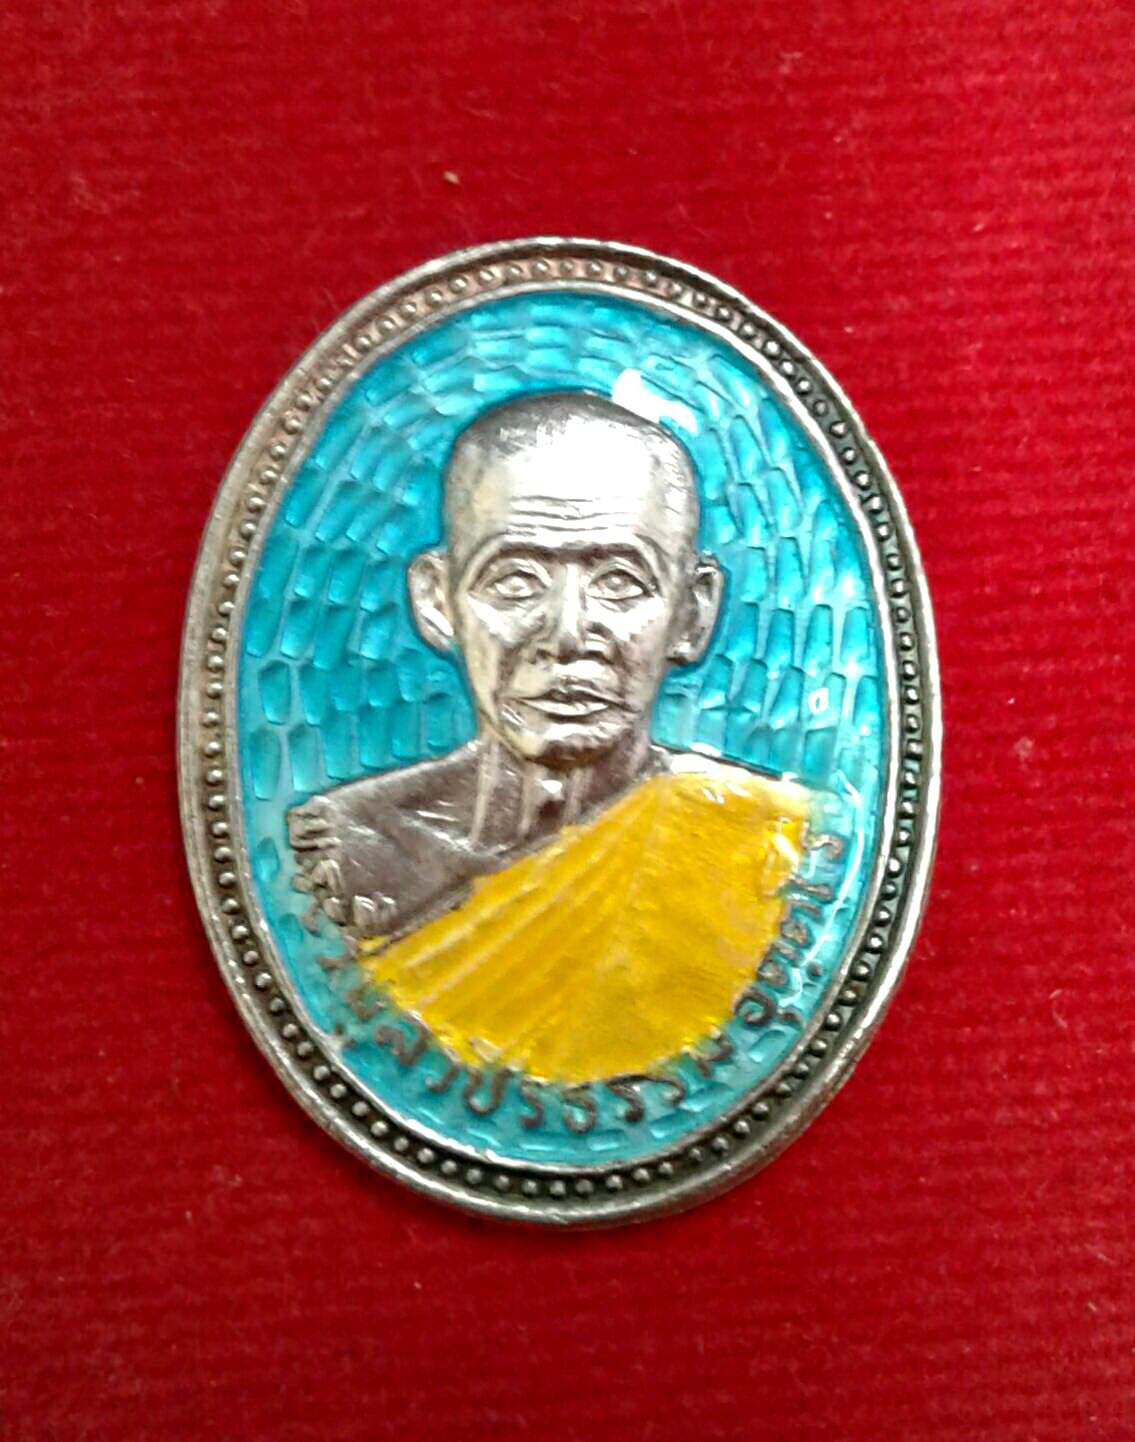 เหรียญหลวงพ่อสว่าง พระวิบูลวชิรธรรม อุตฺตโร (สว่าง) ที่ระลึกในงานครบรอบ 18 ปี วัดคฤหบดีสงฆ์ (วัดท่าพุทรา)  